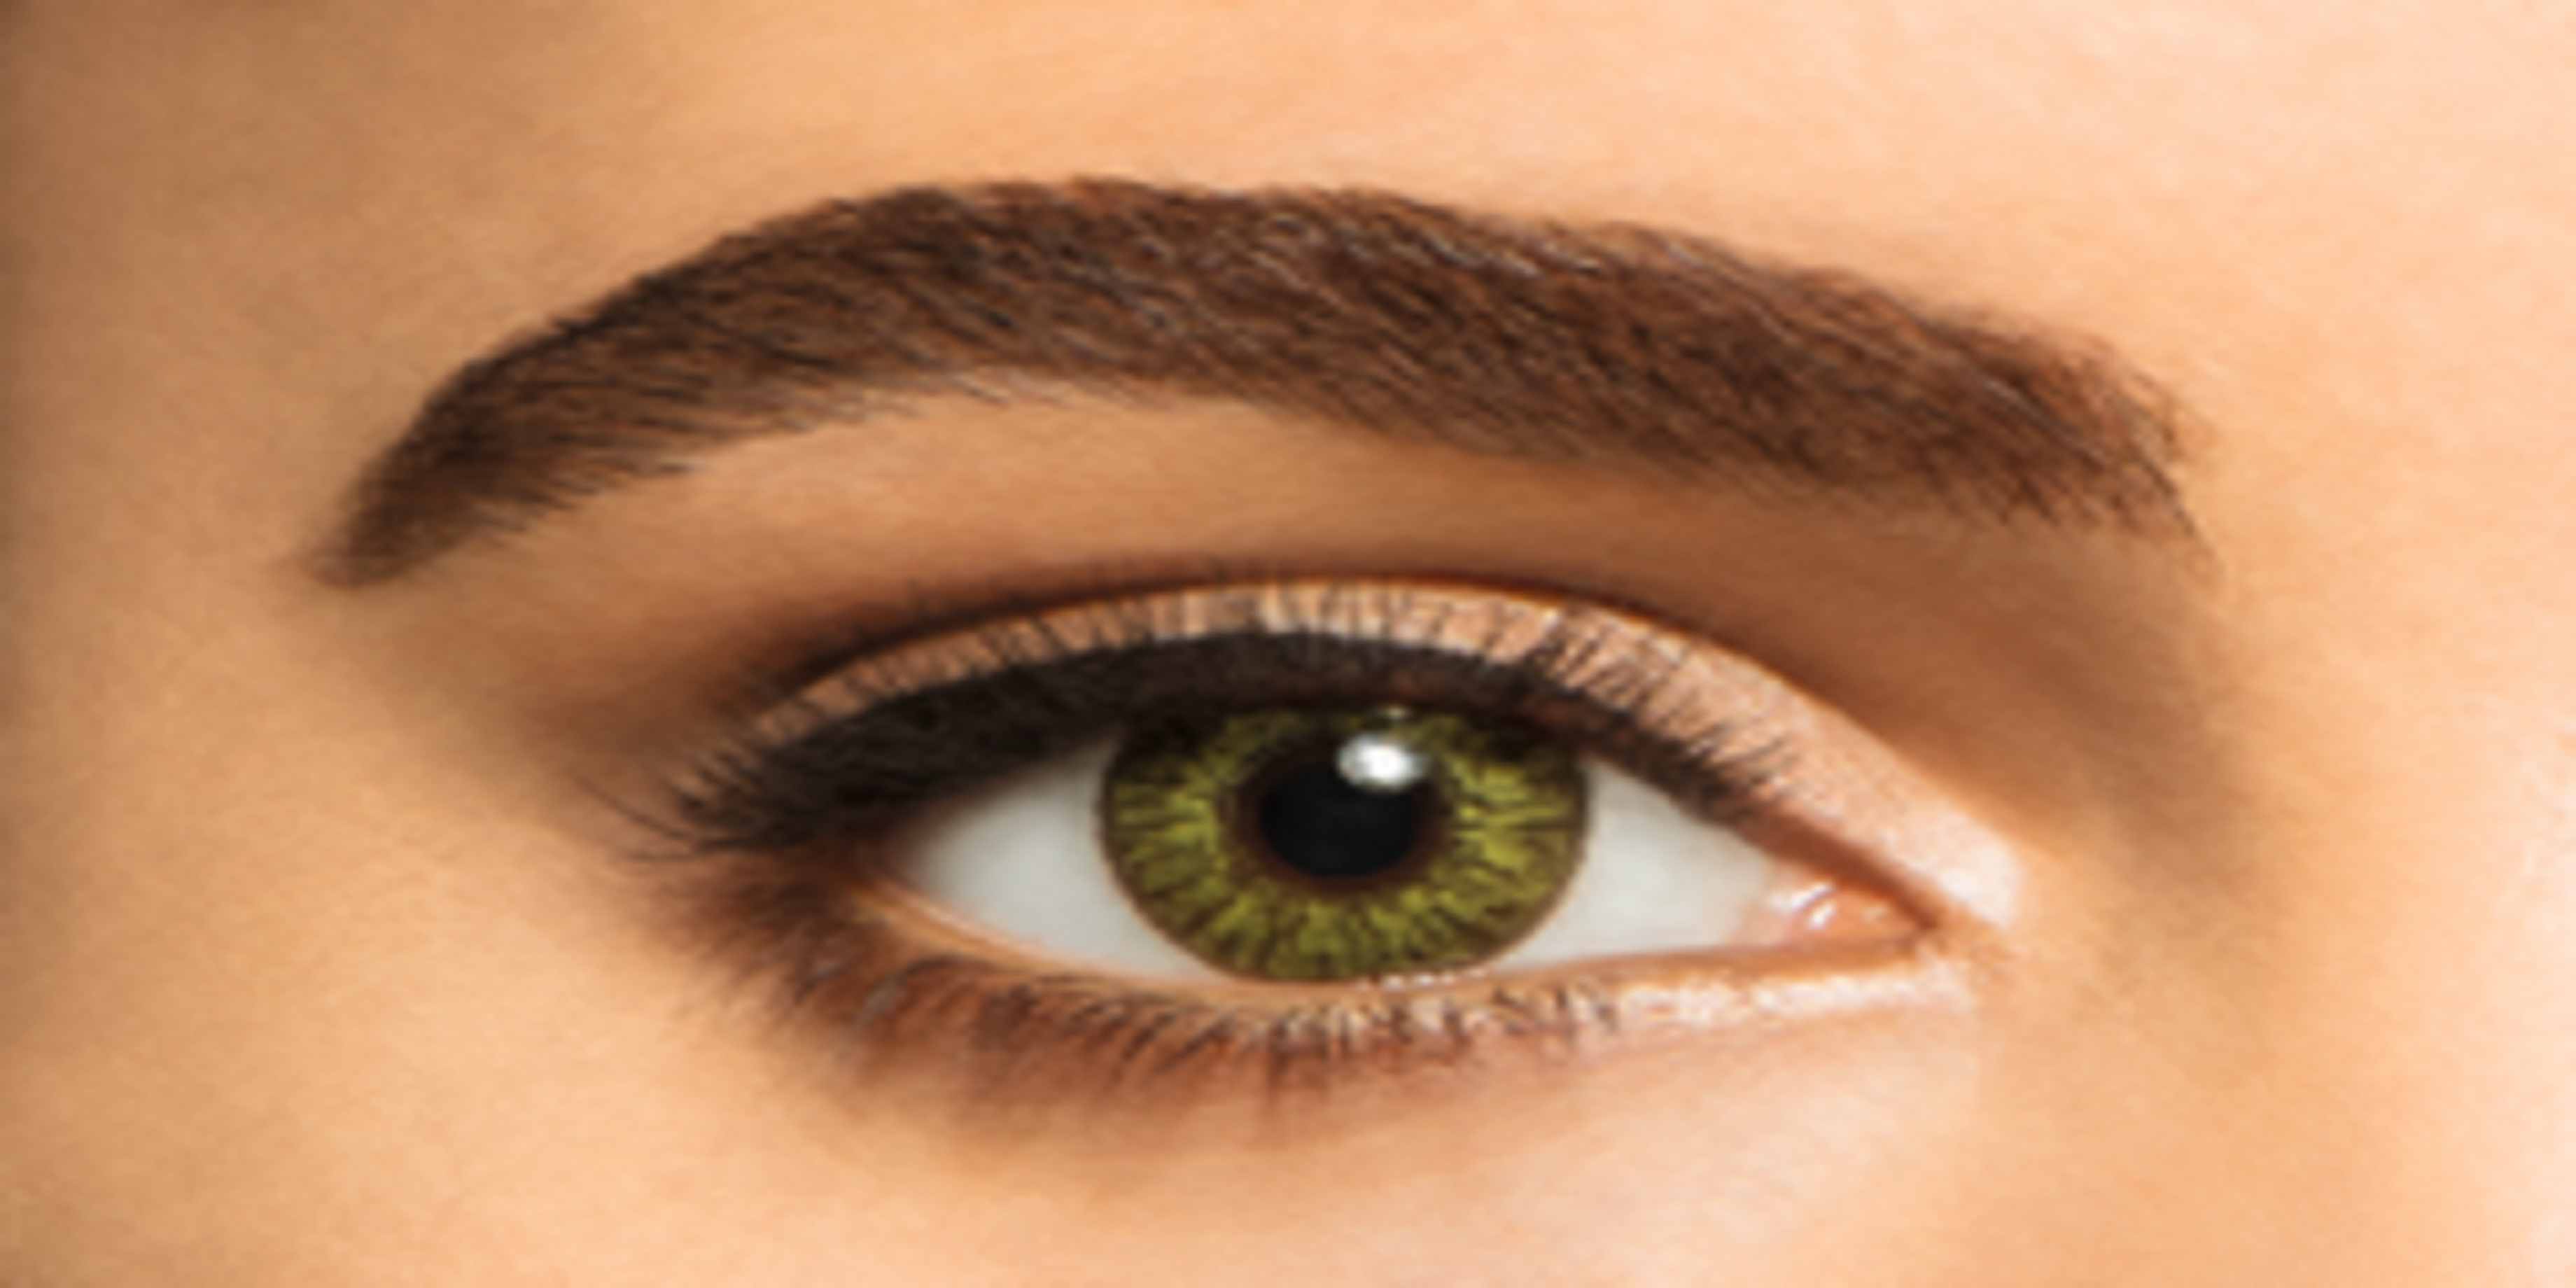 mujer con lentes de contacto de color verde